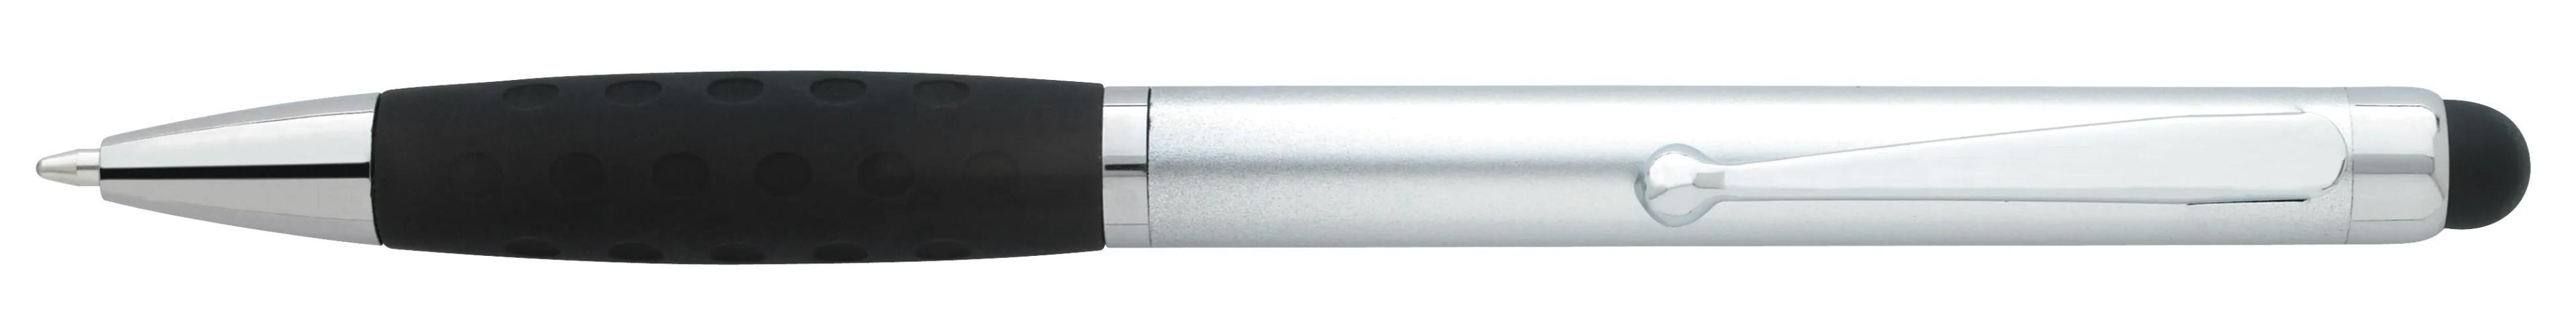 Silver Stylus Grip Pen 7 of 11